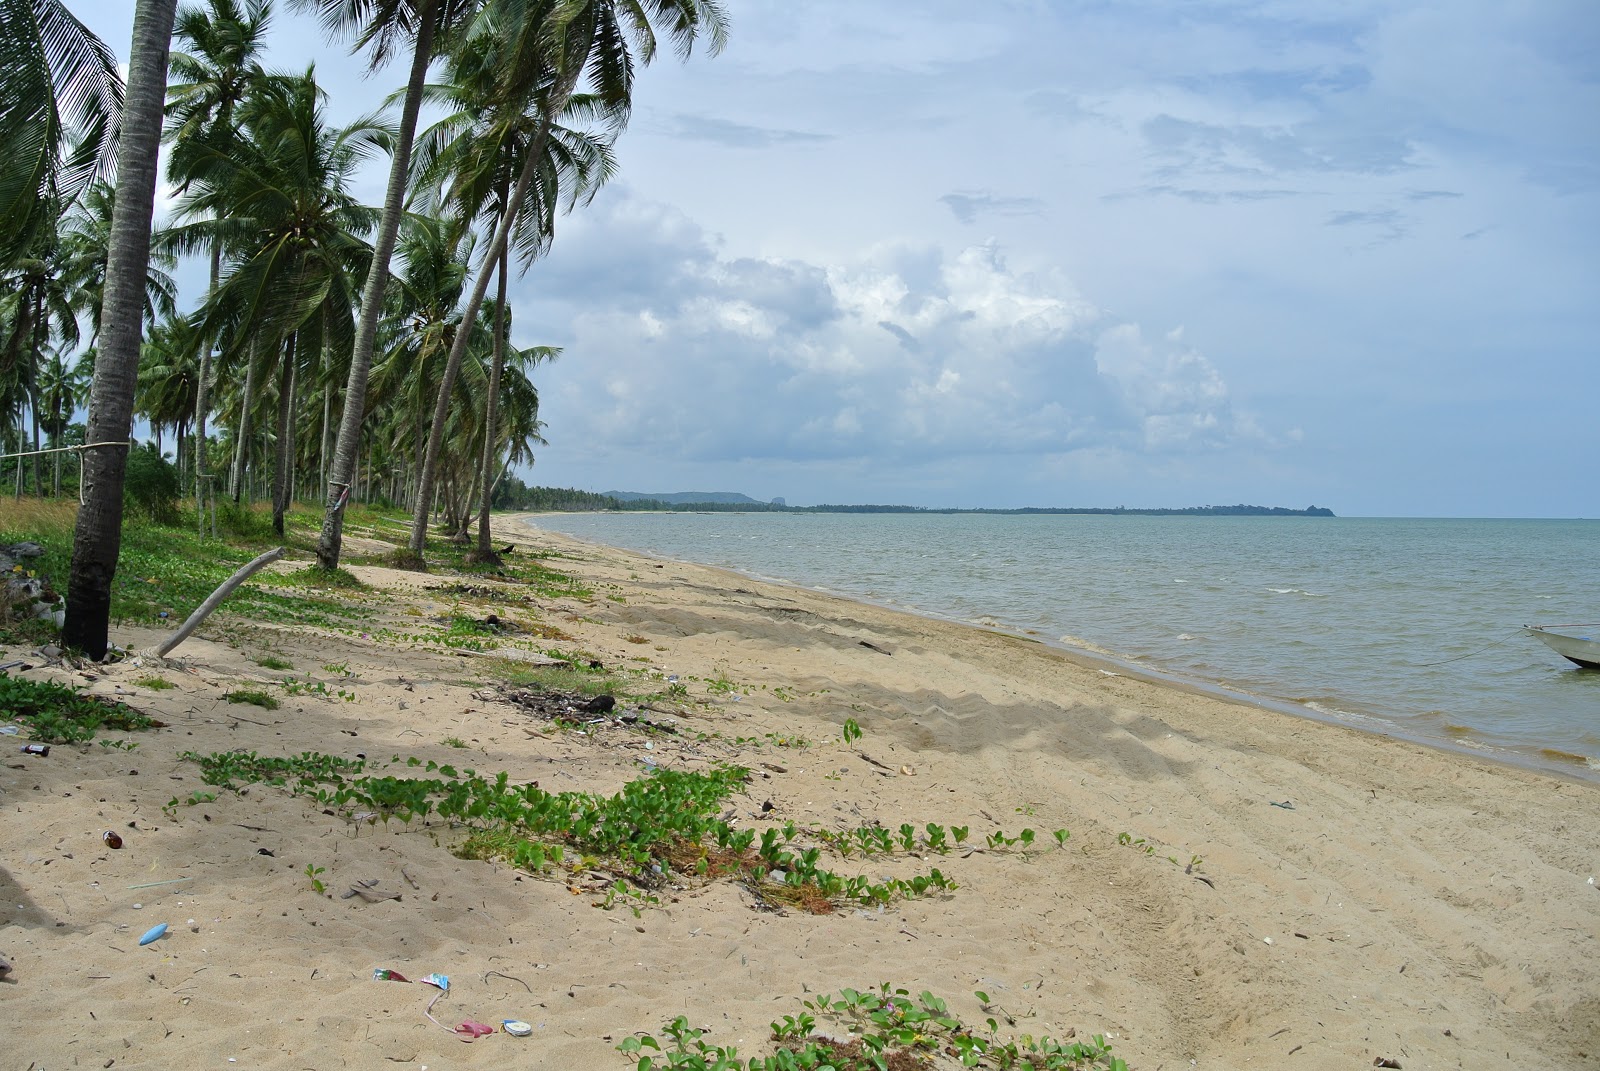 Foto de Tawanchai Beach localizado em área natural